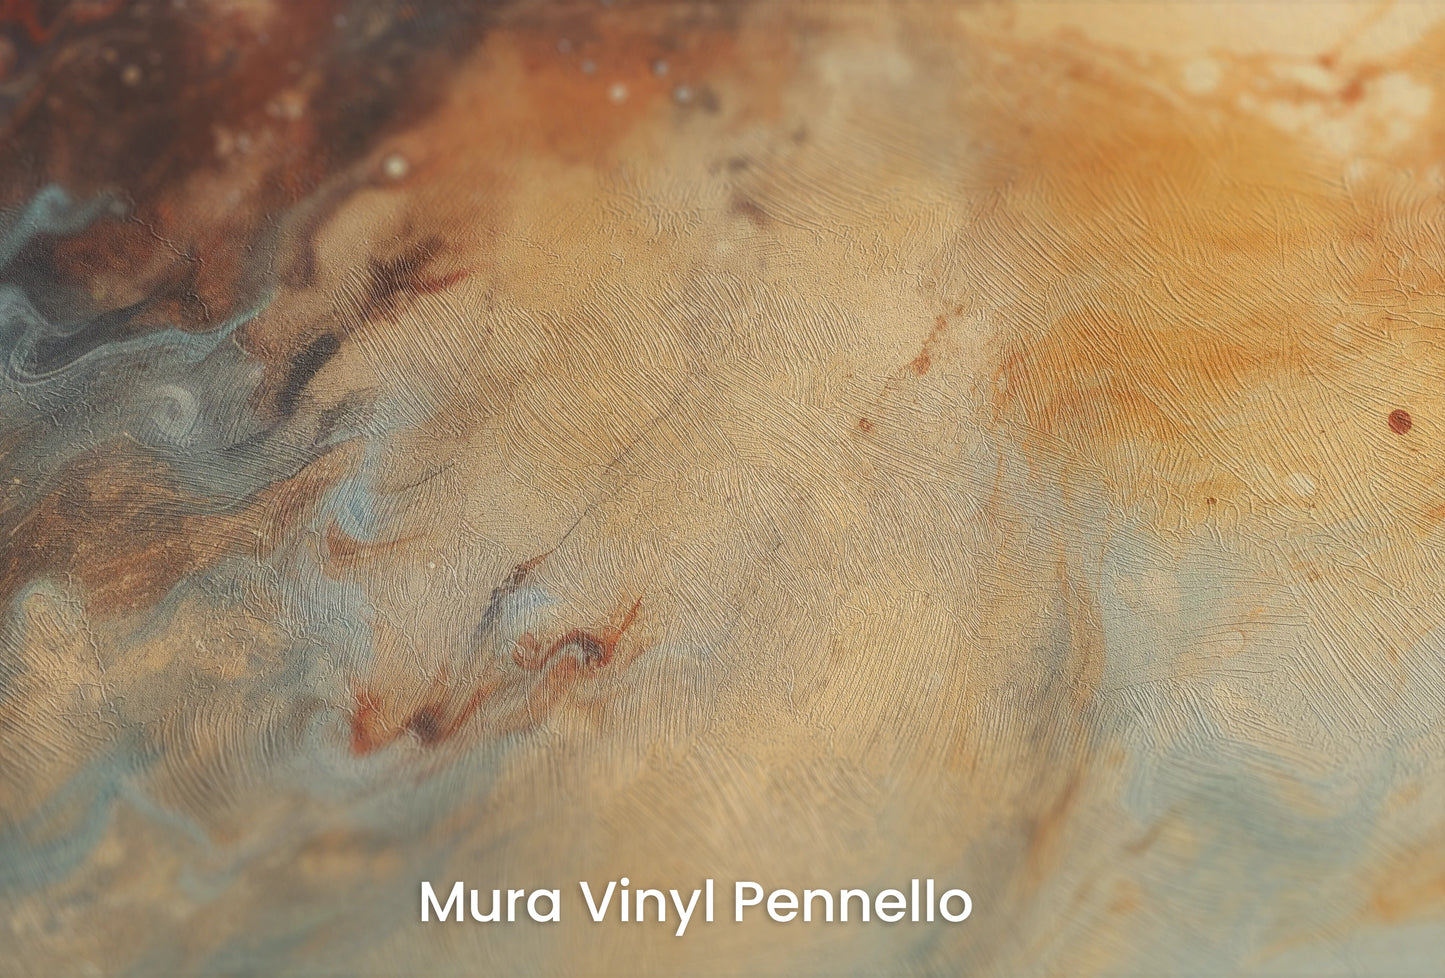 Zbliżenie na artystyczną fototapetę o nazwie Callisto's Vision na podłożu Mura Vinyl Pennello - faktura pociągnięć pędzla malarskiego.